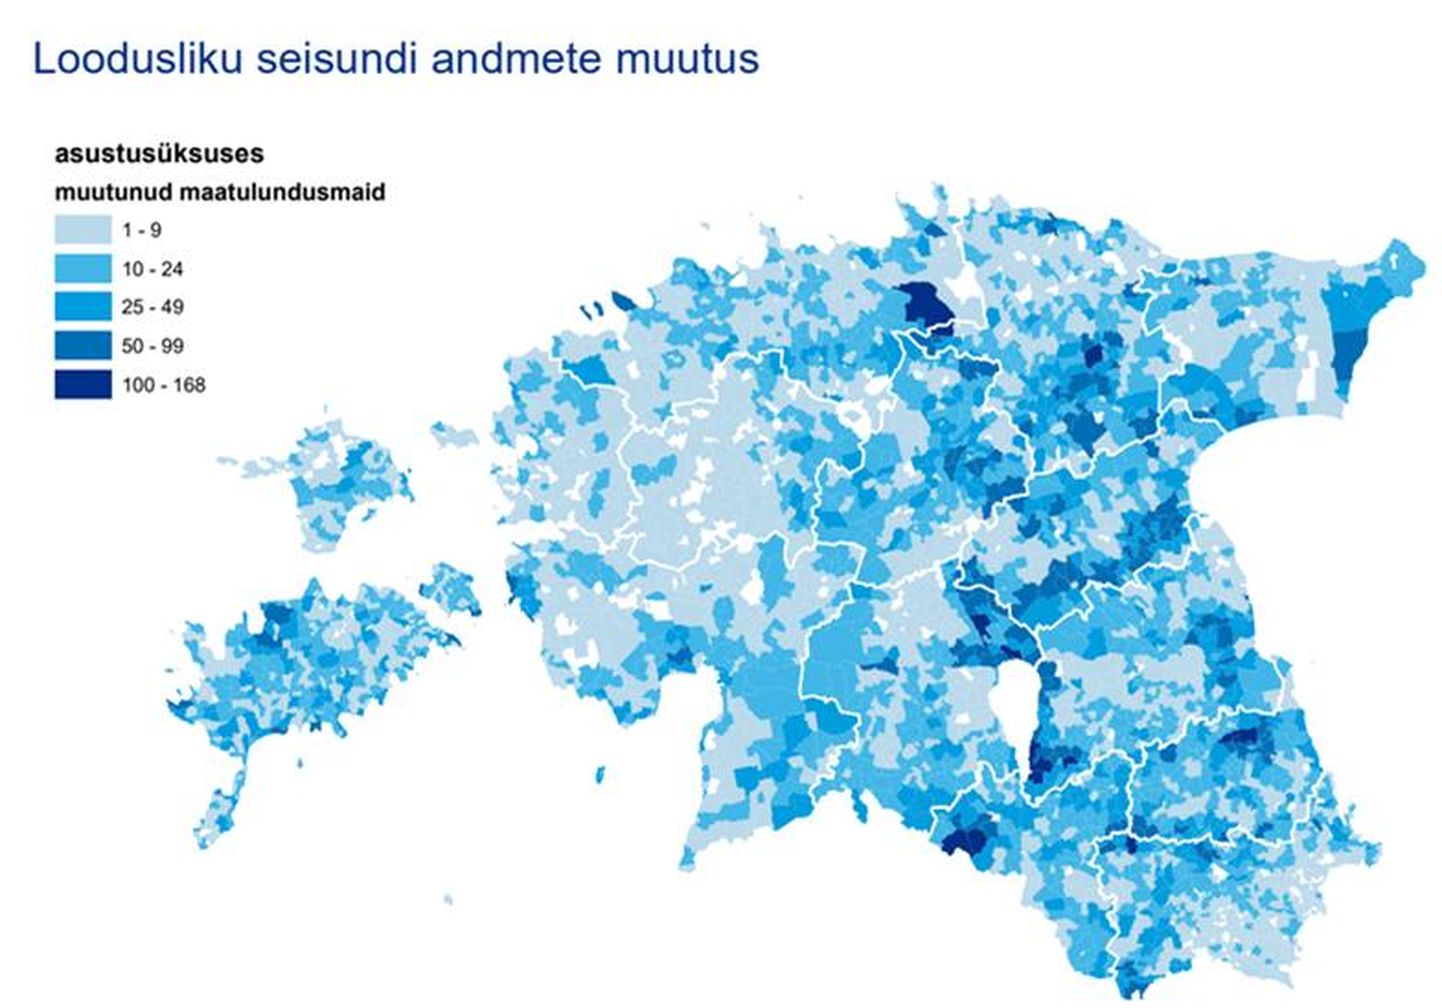 Kõige rohkem on kõlvikute andmete muudatusi Ida-Eestis.